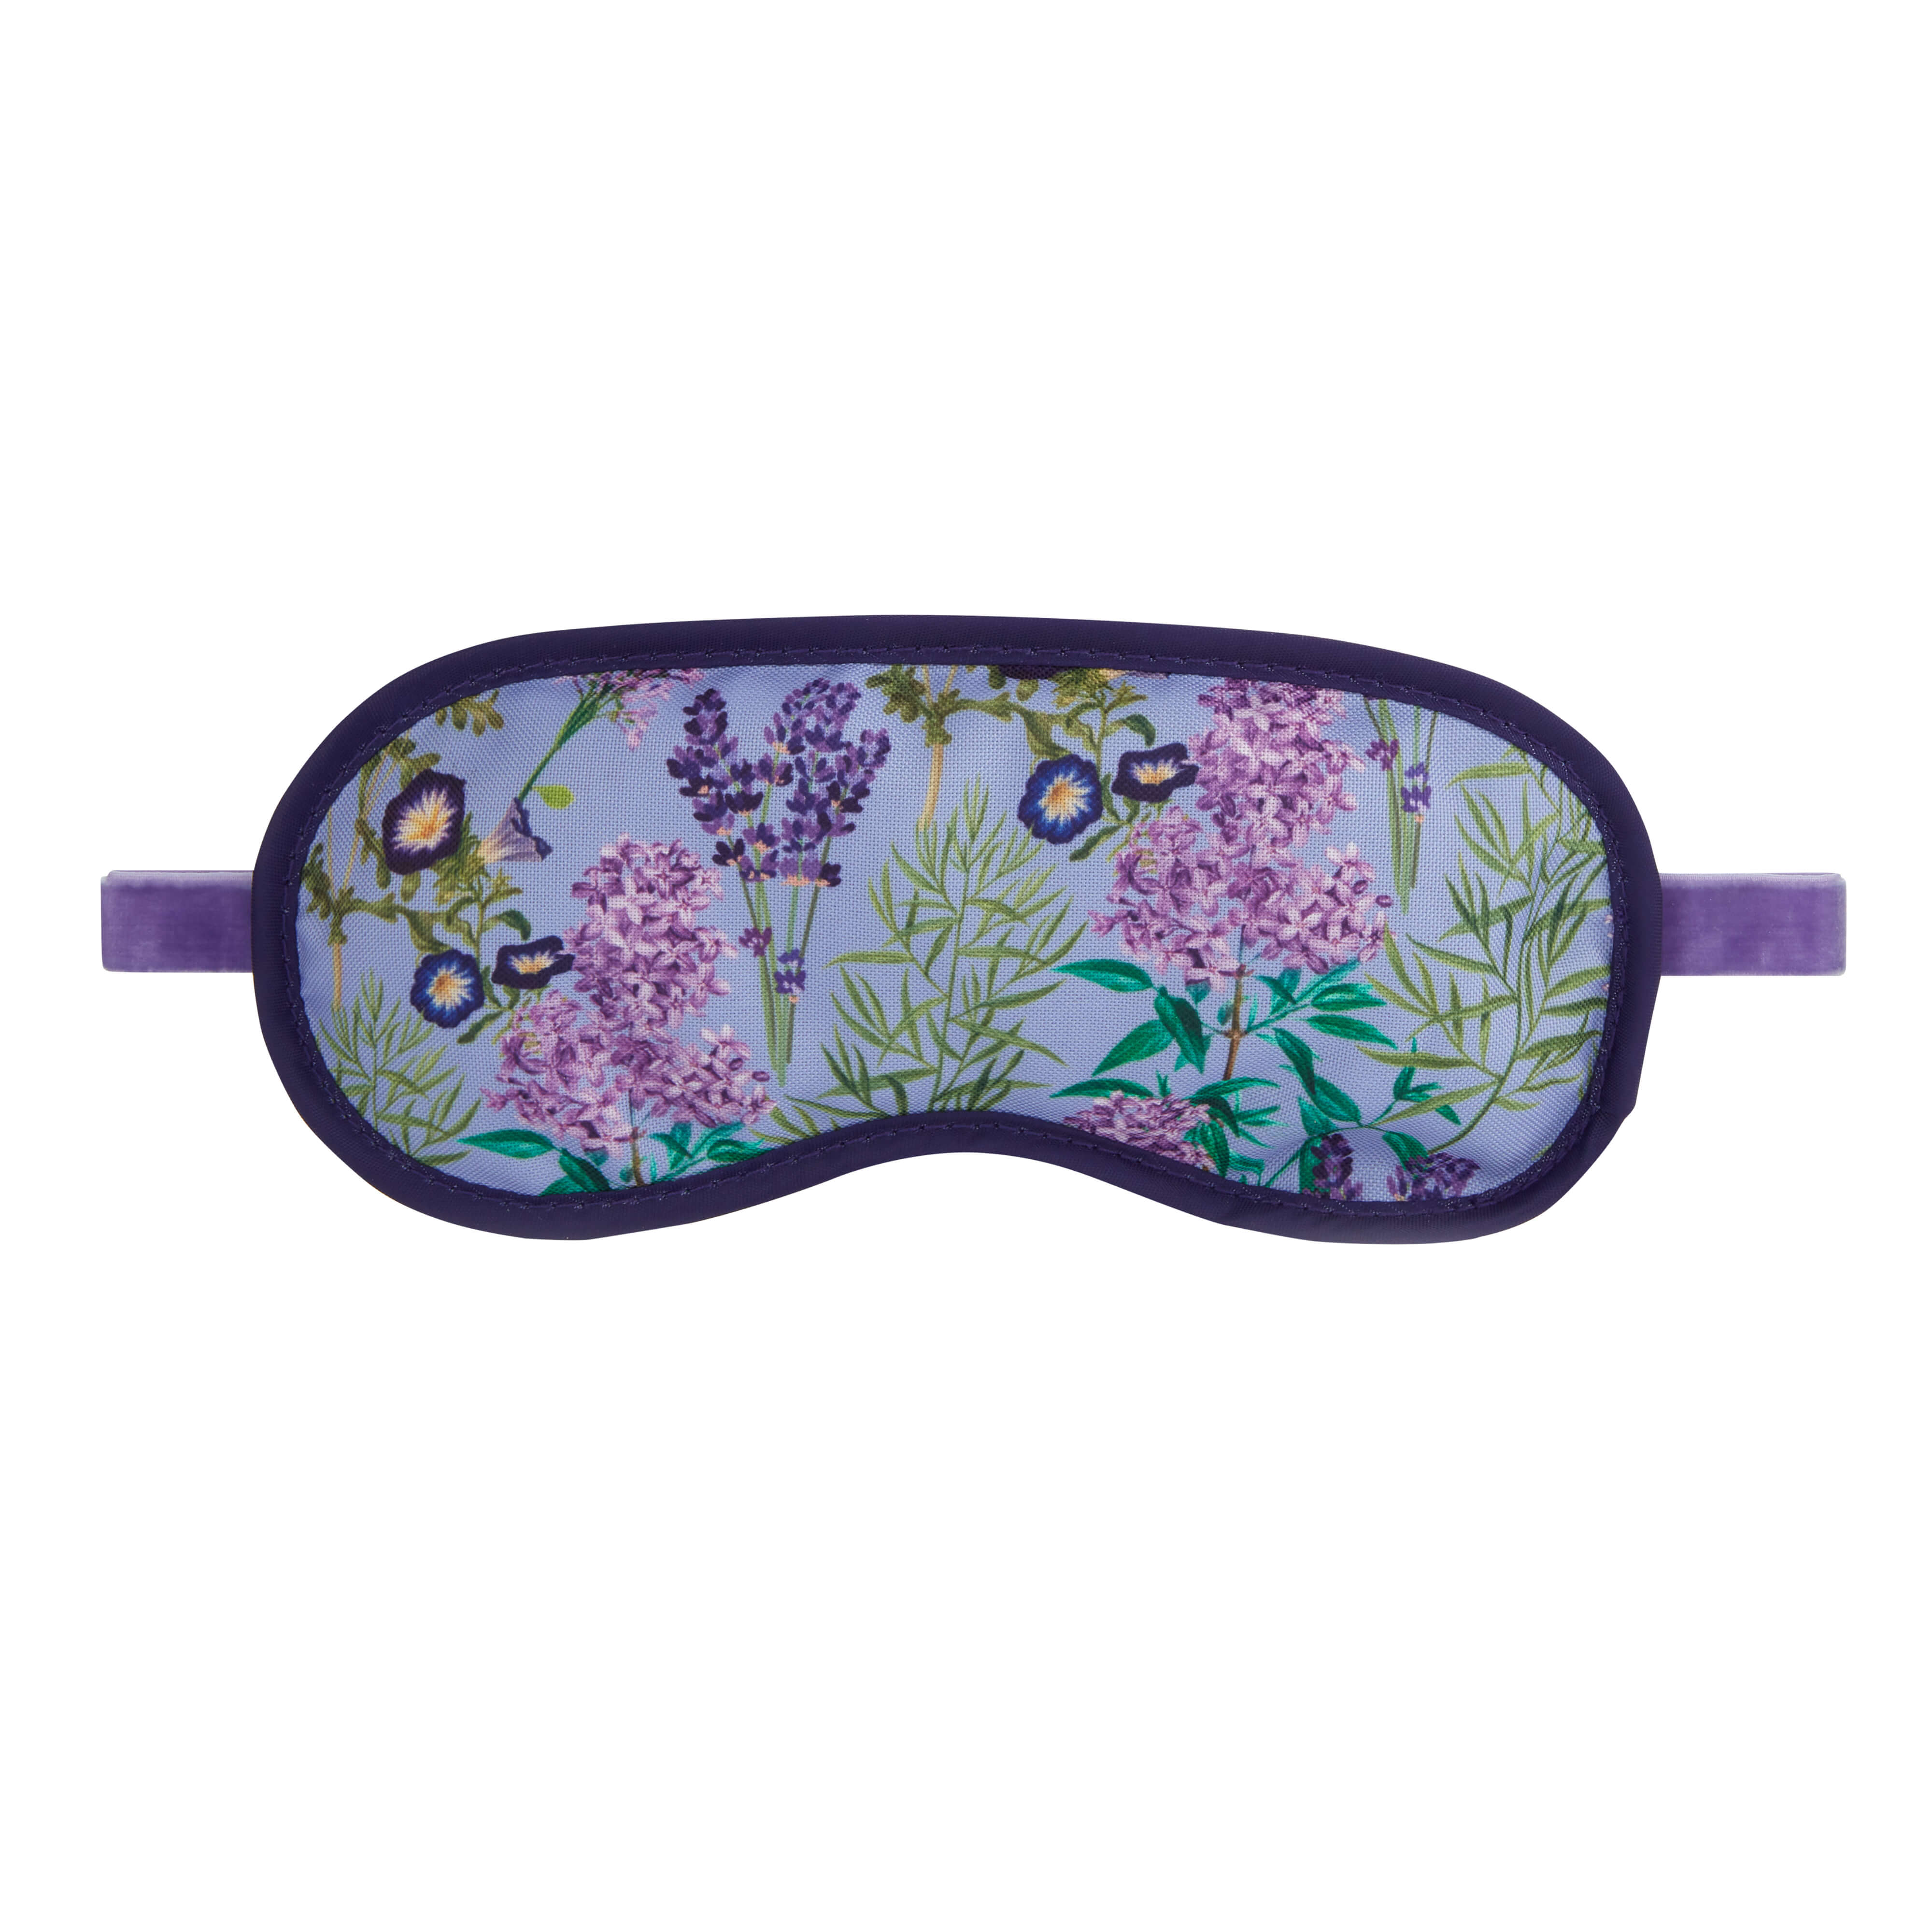 lavender eye mask for sleeping